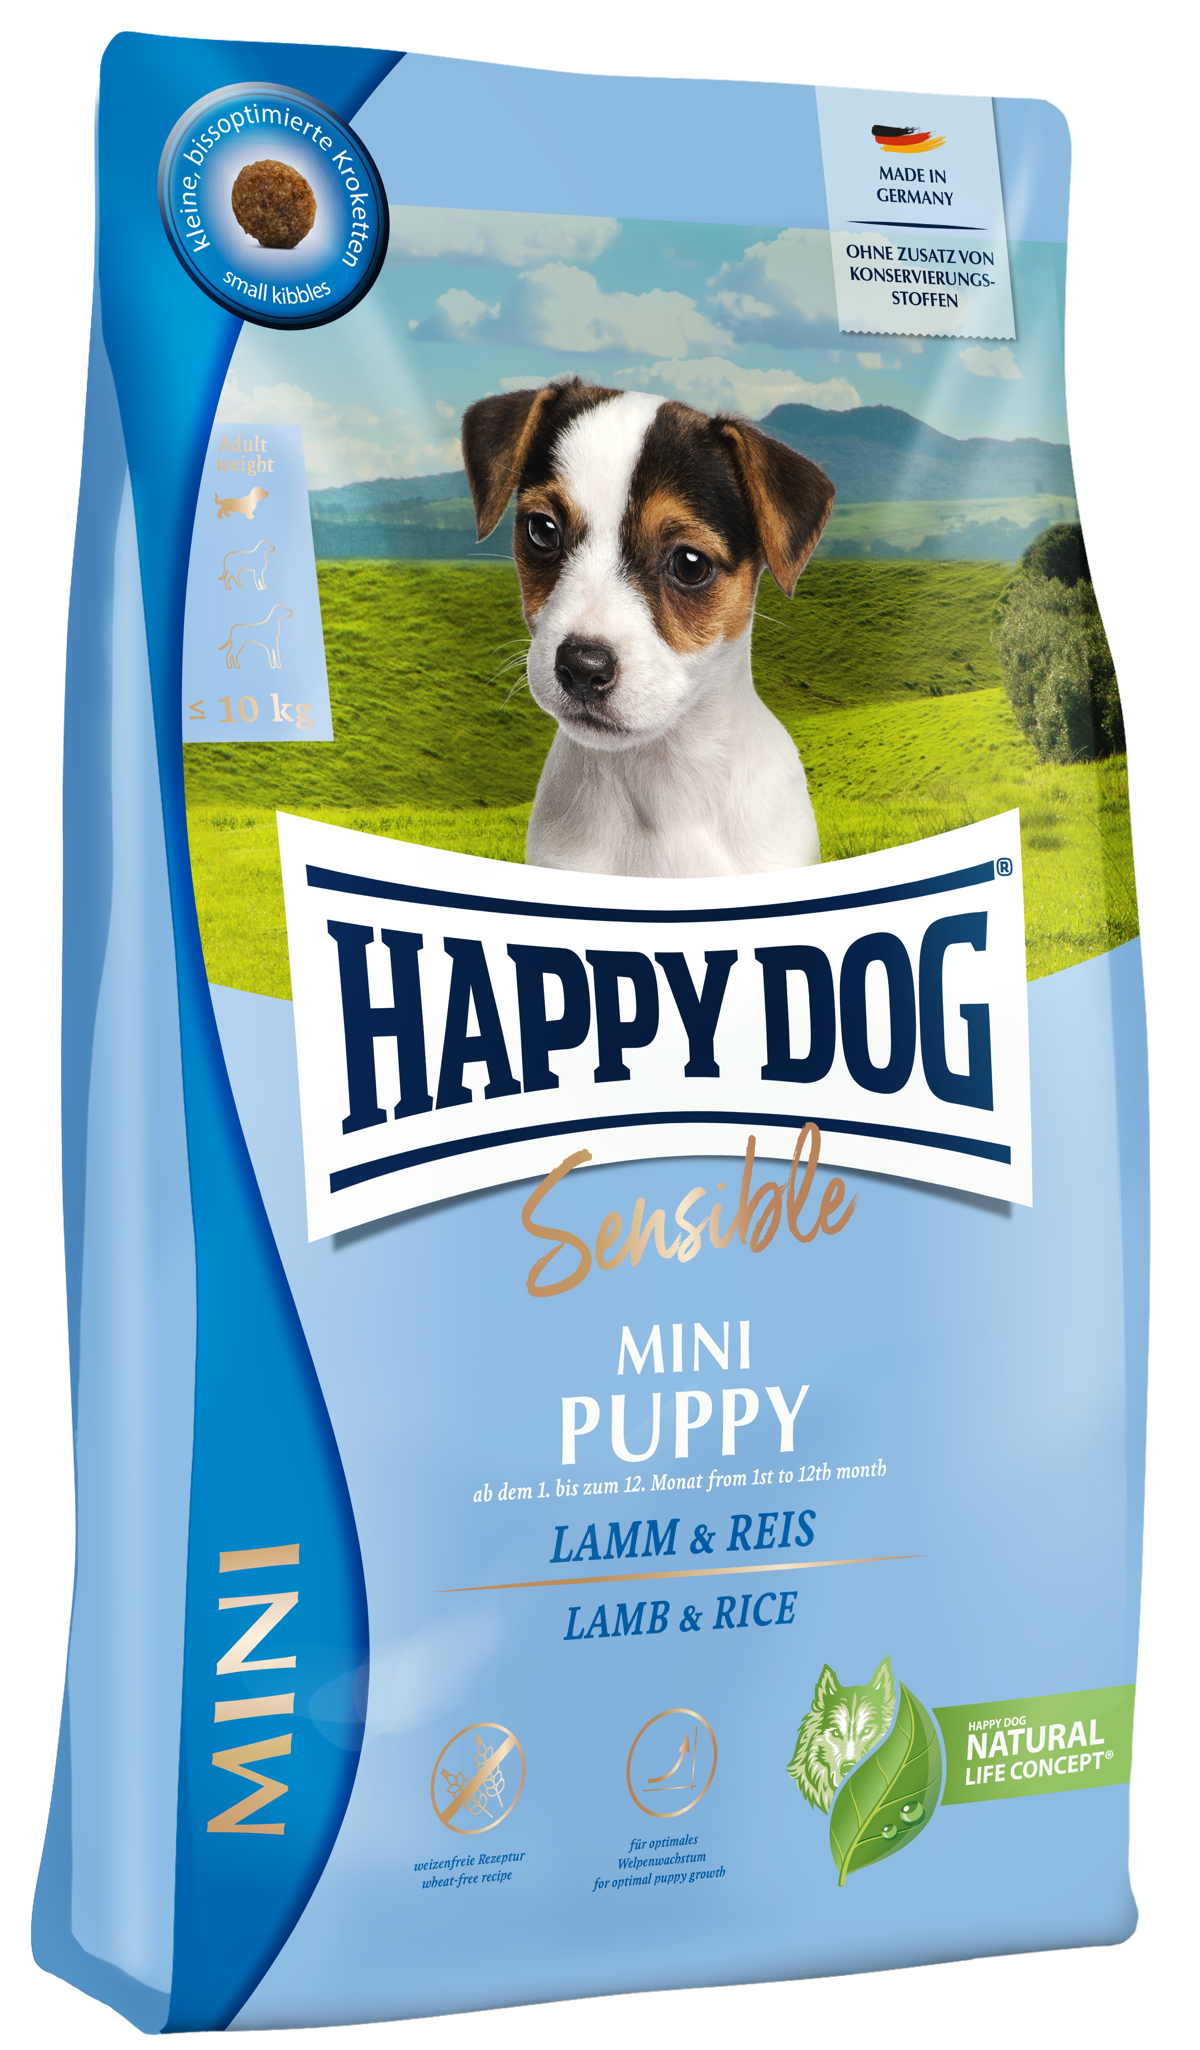 デリケートな子犬のための特にお腹に優しいミニ センシブル パピー(ラム&ライス)の製品画像